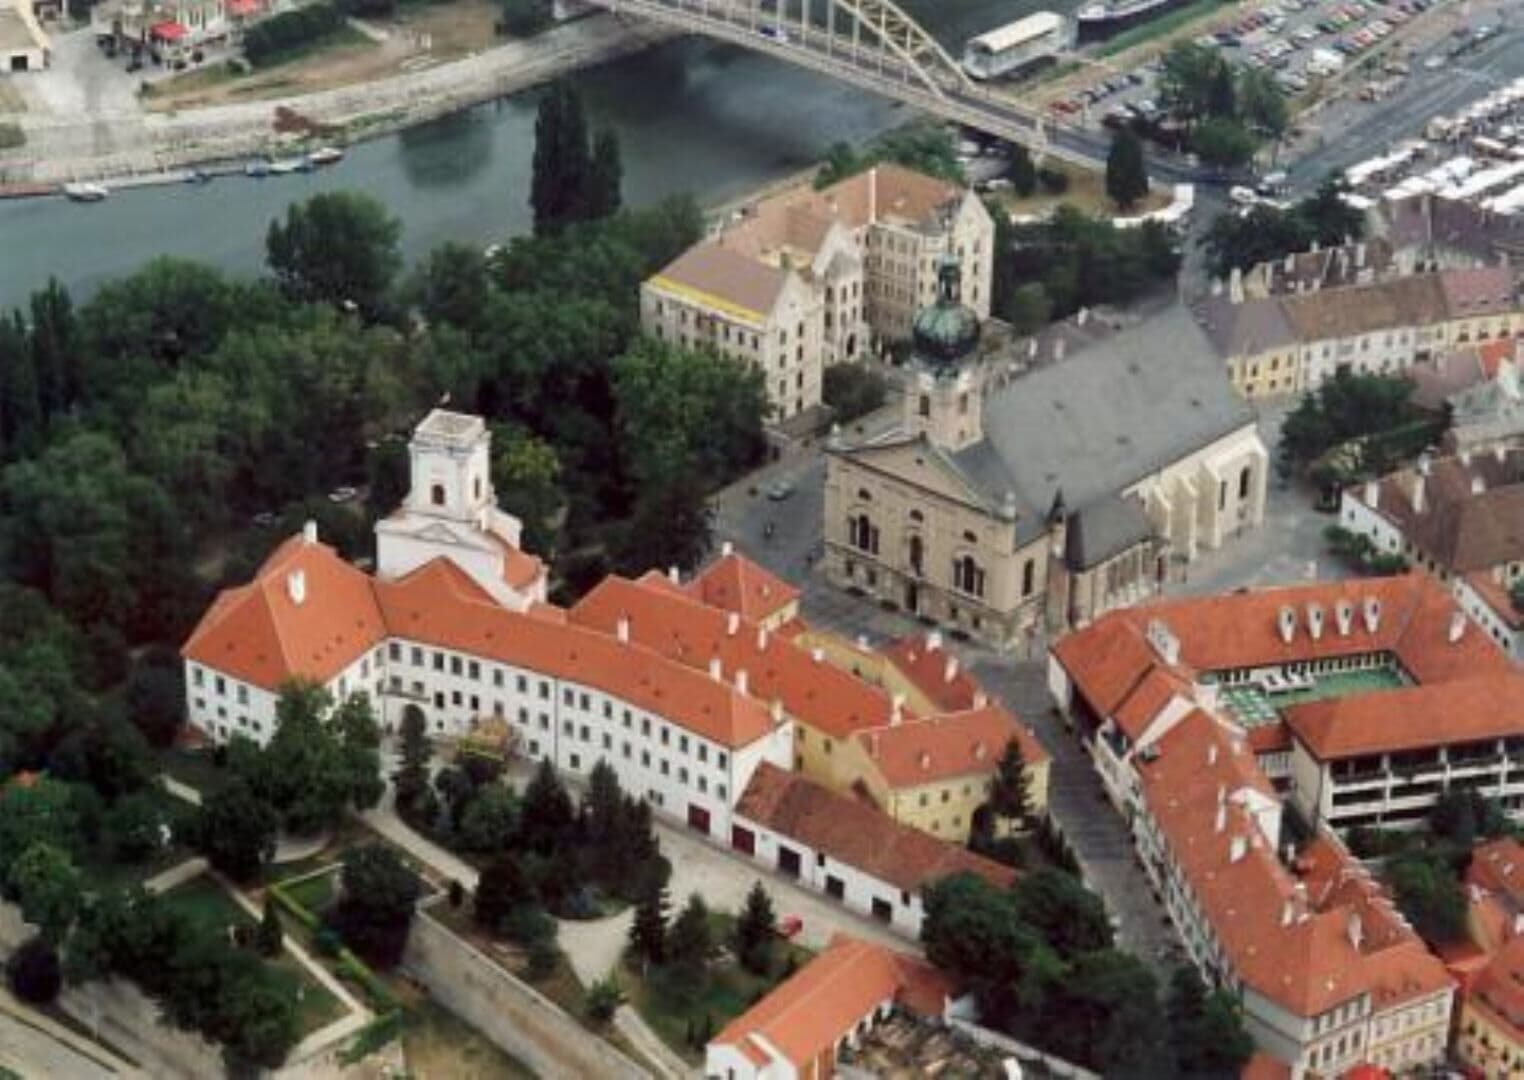 Győr photo